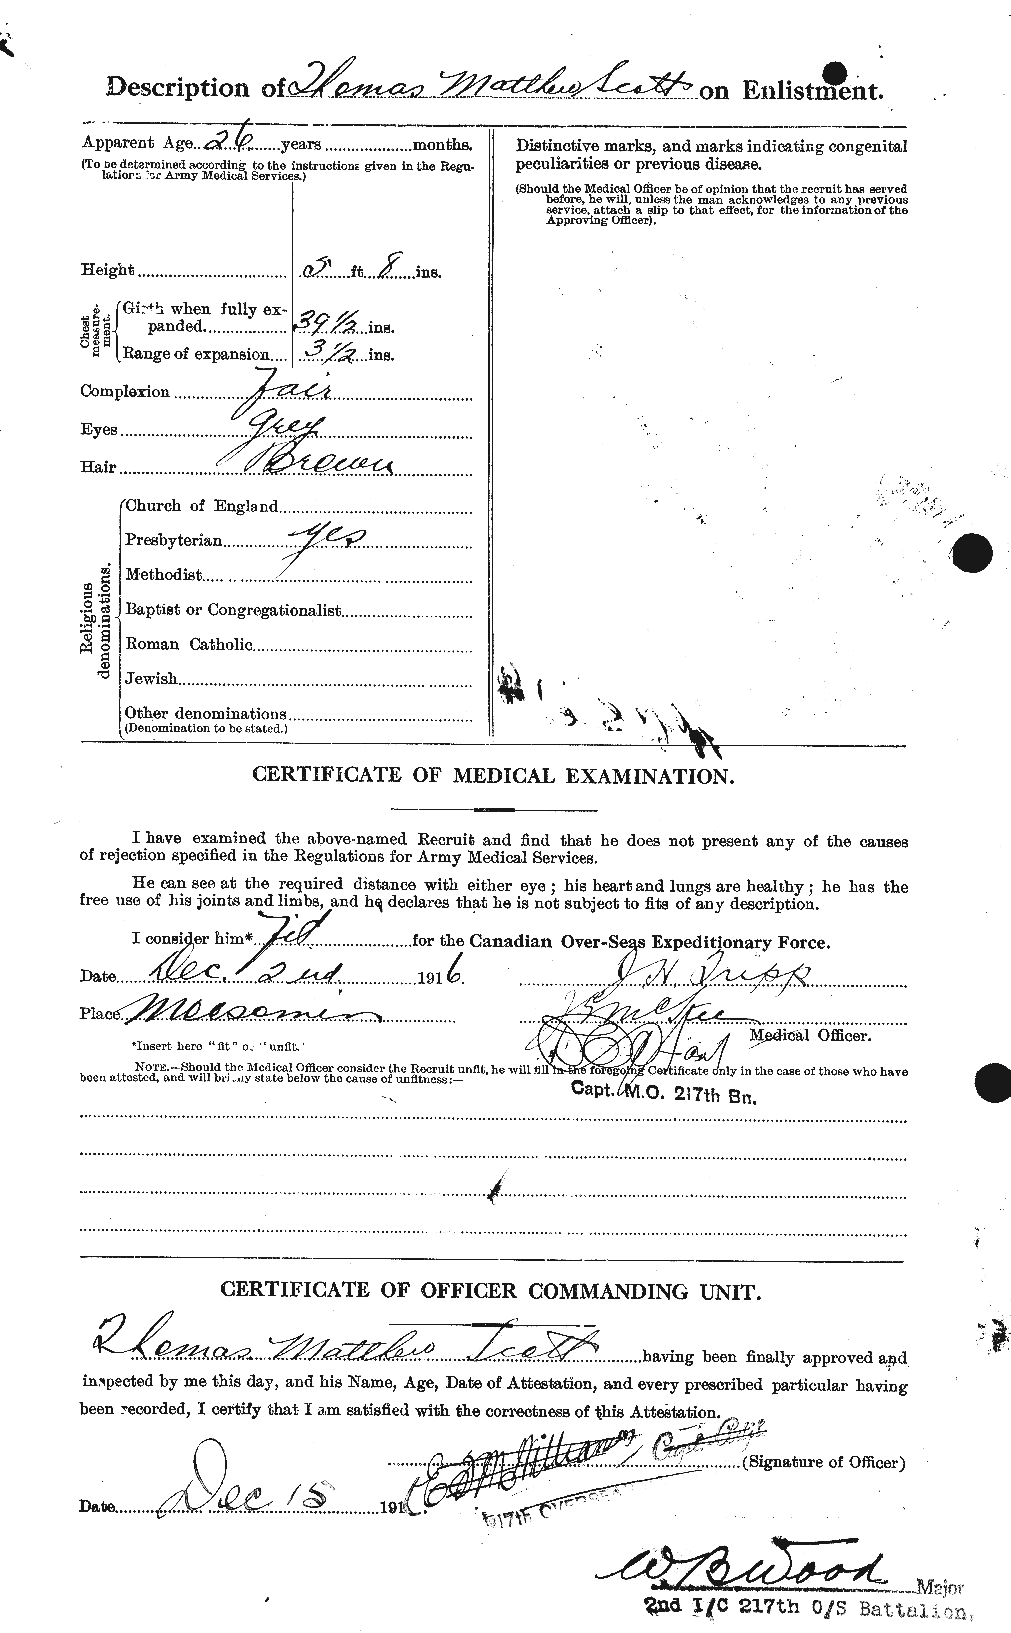 Dossiers du Personnel de la Première Guerre mondiale - CEC 088228b